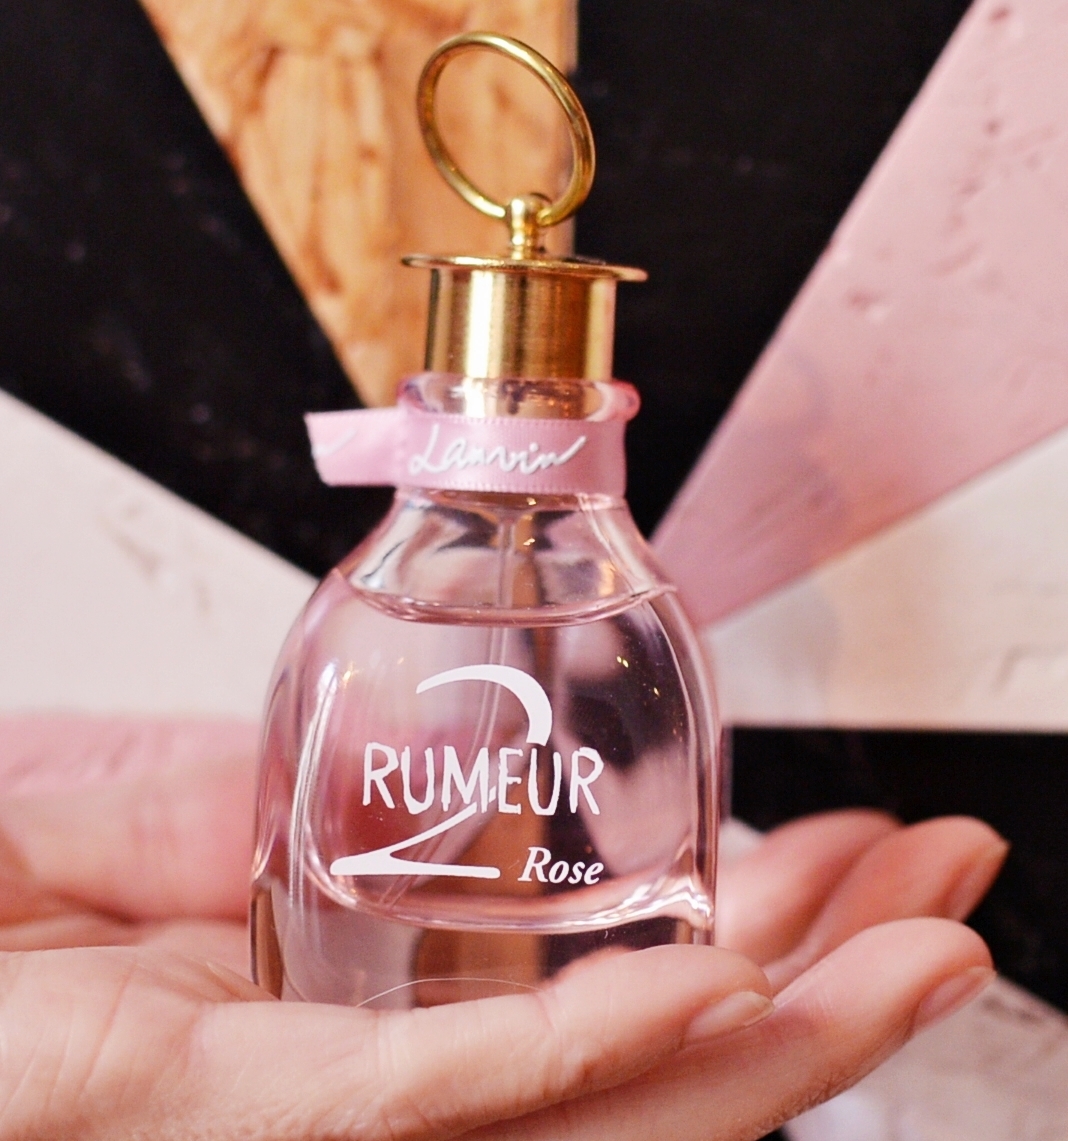 Lanvin Rumeur 2 Rose perfume